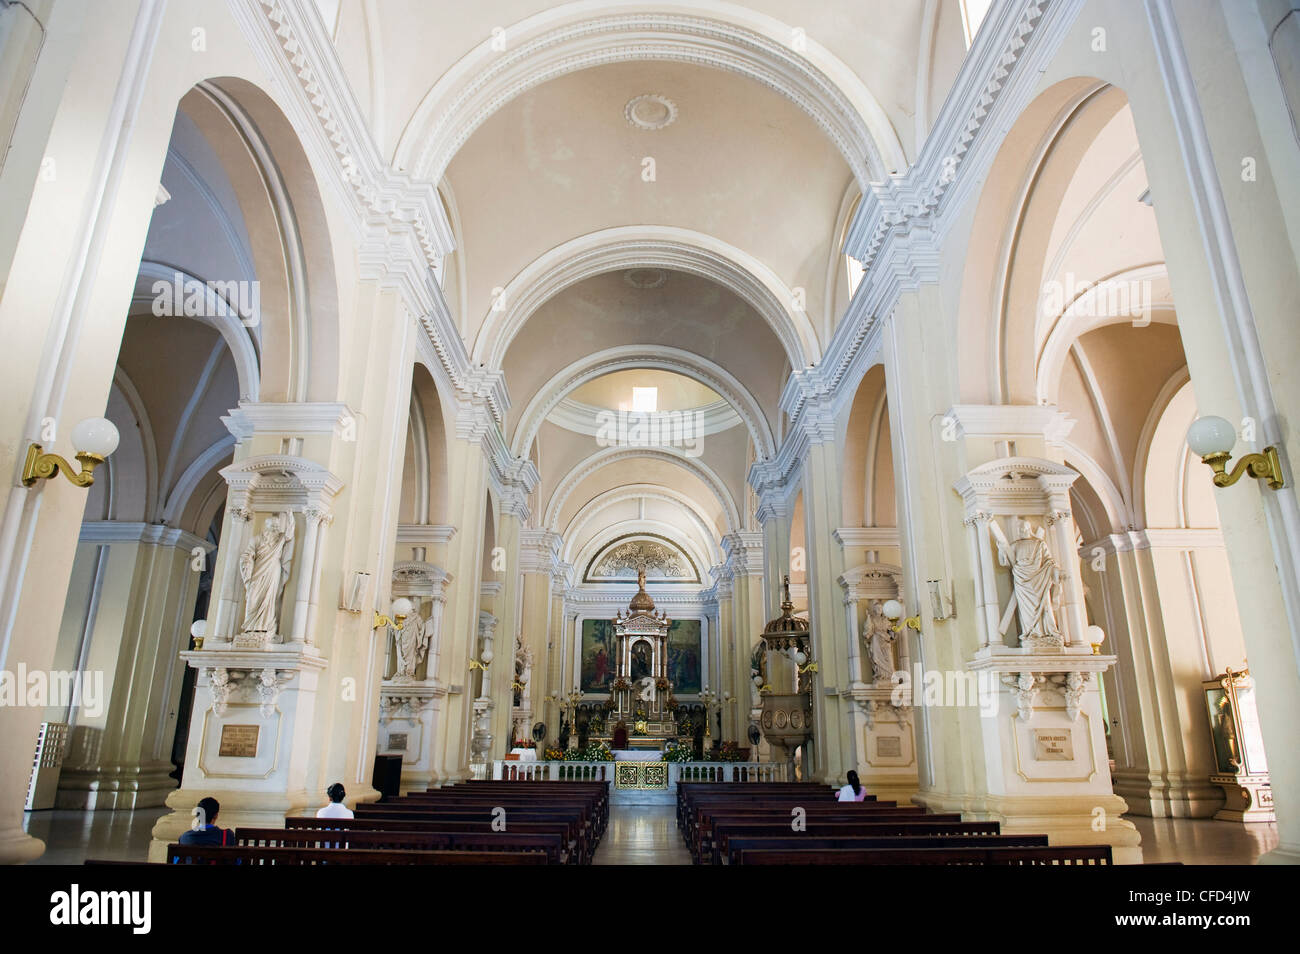 Leon Cathedral, Basilica de la Asuncion, Leon, Nicaragua, Central America Stock Photo